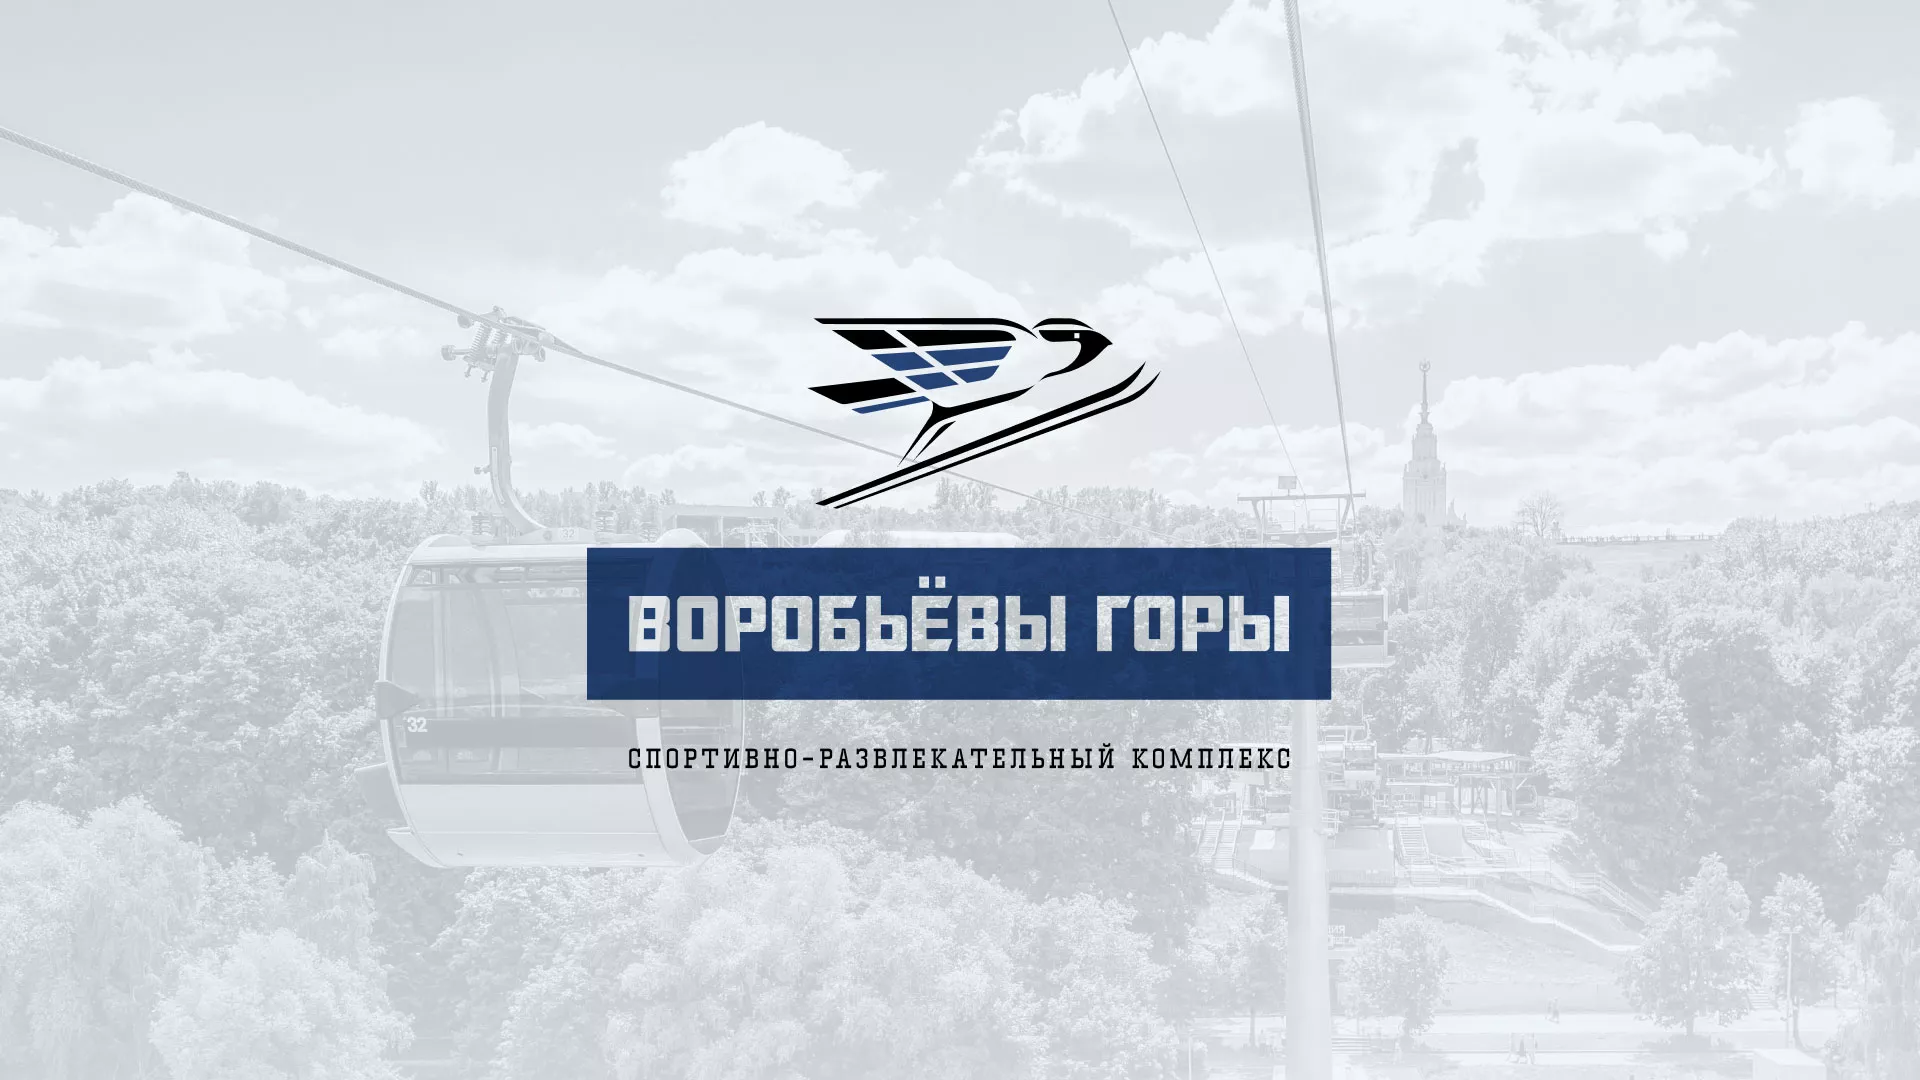 Разработка сайта в Похвистнево для спортивно-развлекательного комплекса «Воробьёвы горы»